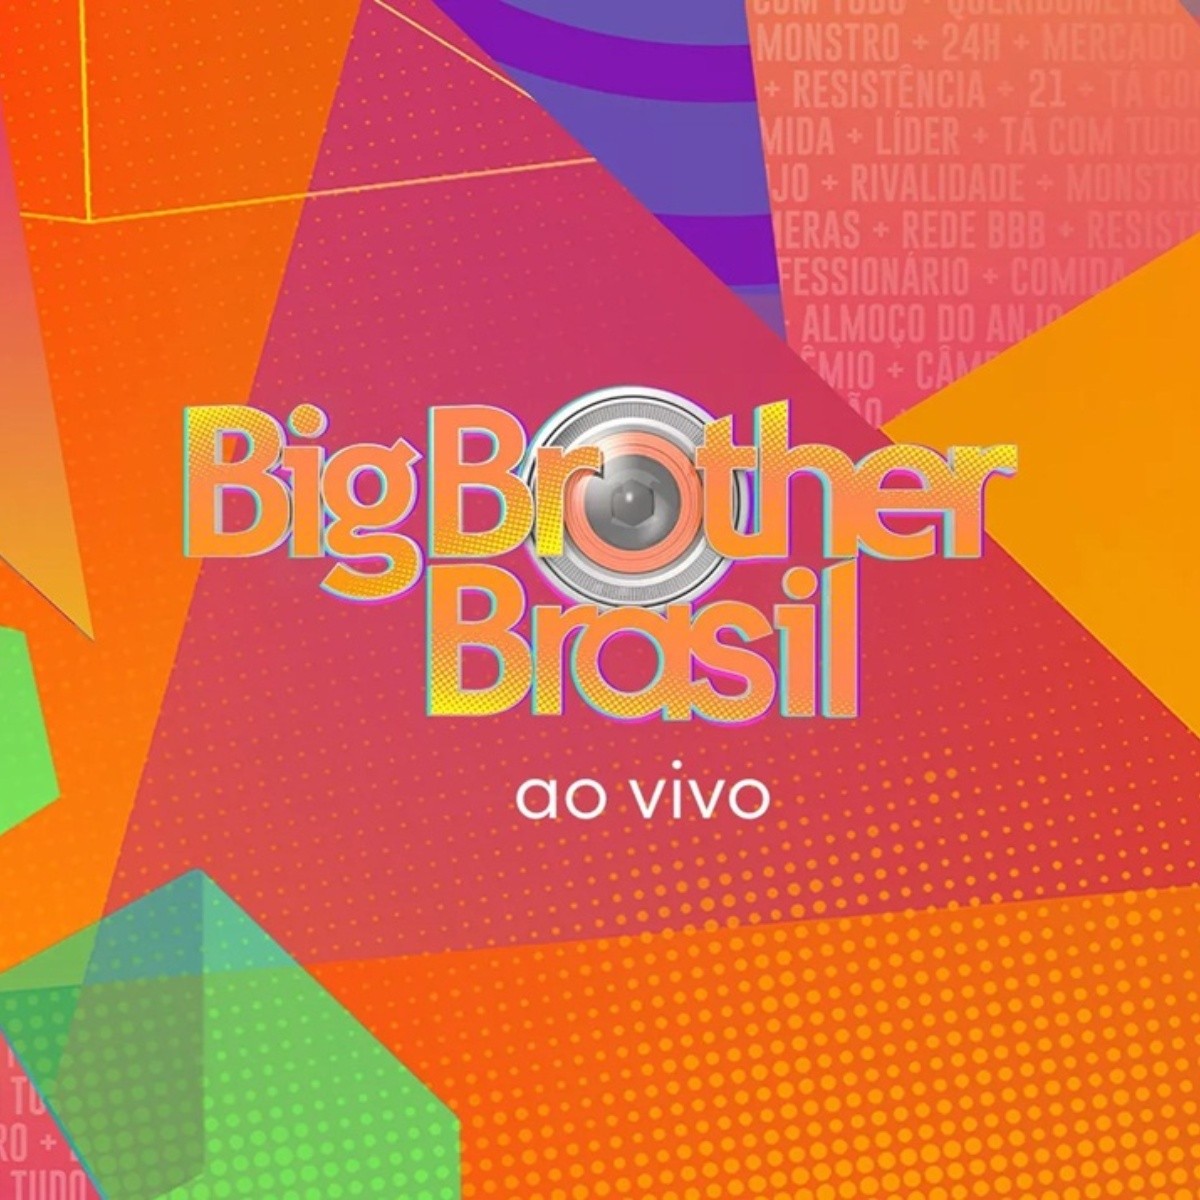 b 21 Veja Que Horas Comeca O Programa Hoje 30 E Como Assistir Ao Vivo E Gratis Em Noite De Eliminacao Big Brother Brasil Bolavip Brasil